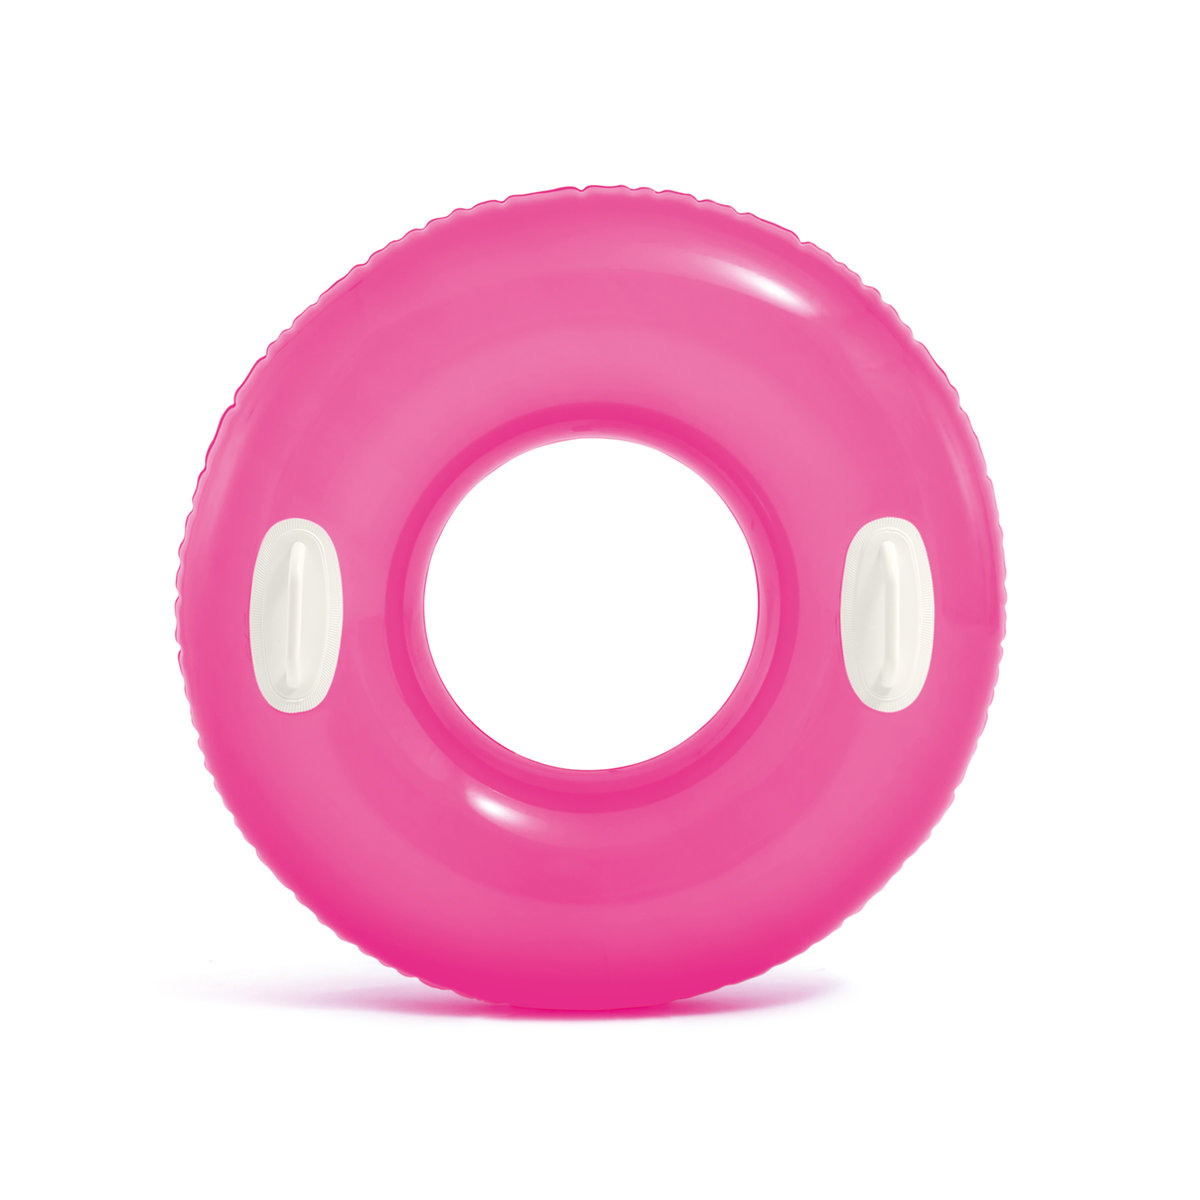 Фото - Іграшка для ванної Intex Koło do pływania kółko plażowe z uchwytami różowe  59258 